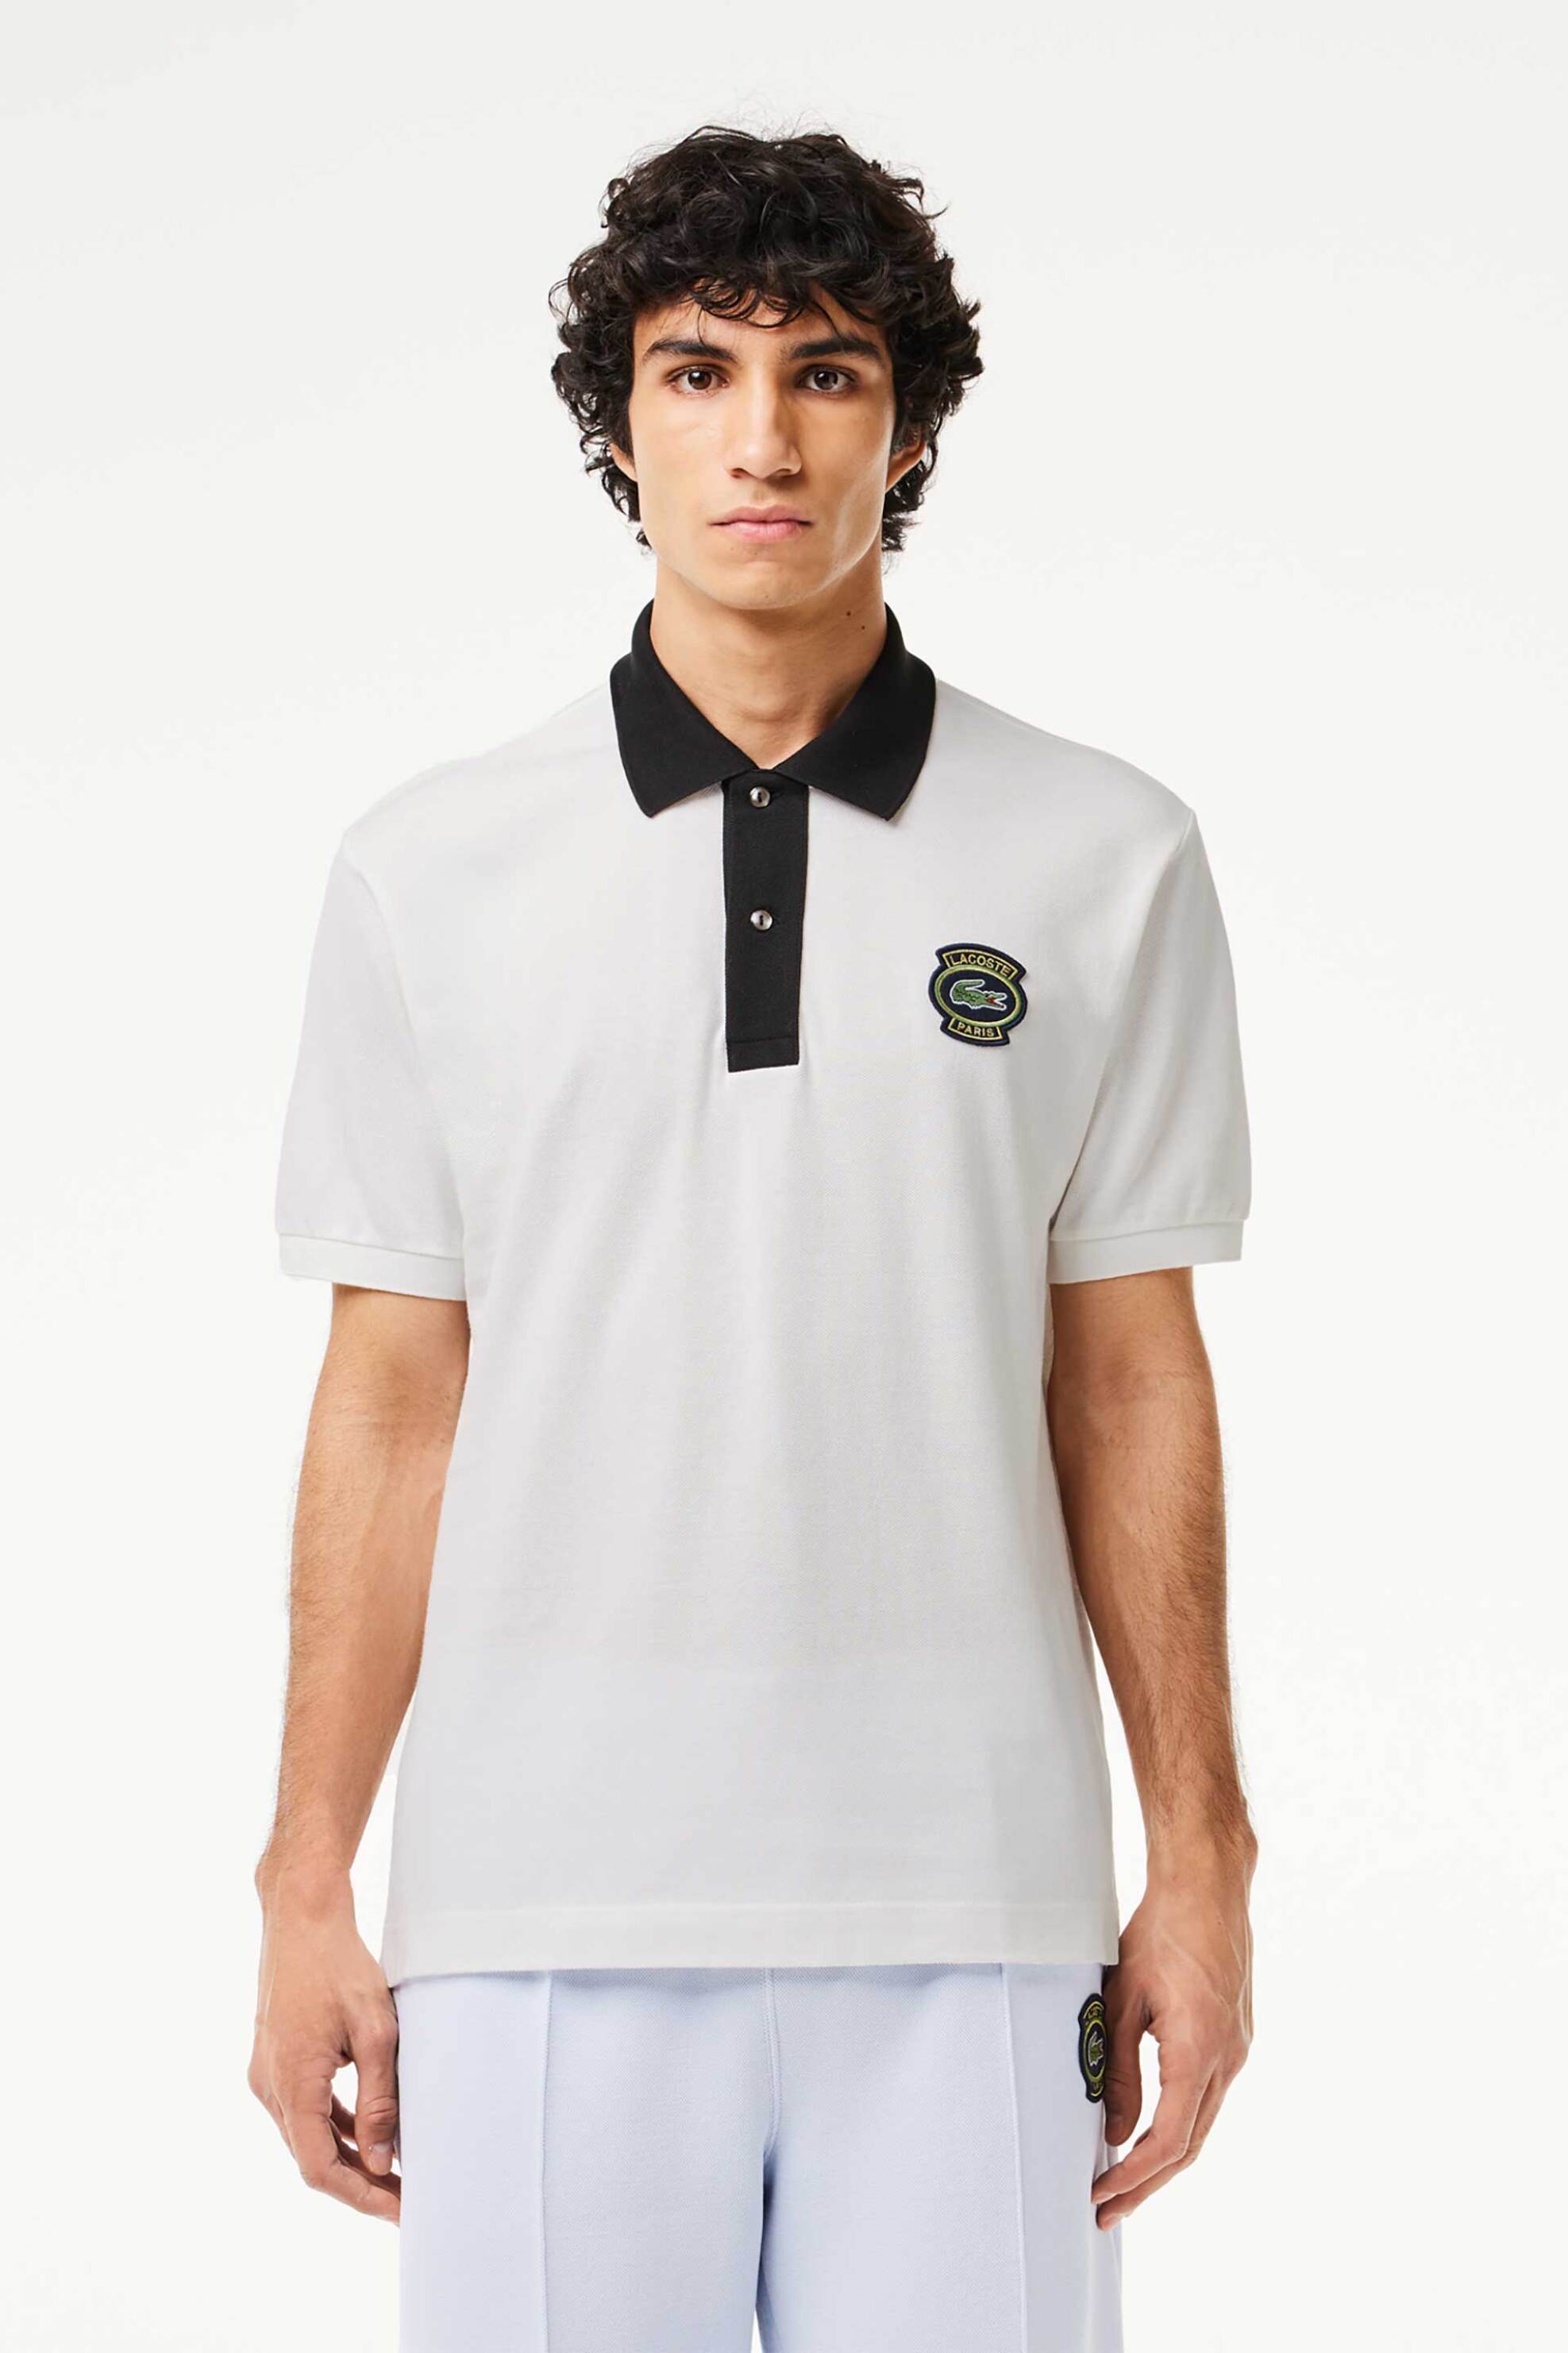 Ανδρική Μόδα > Ανδρικά Ρούχα > Ανδρικές Μπλούζες > Ανδρικές Μπλούζες Πολο Lacoste ανδρική μπλούζα πόλο μονόχρωμη βαμβακερή με contrast λεπτομέρειες - PH7369 Λευκό